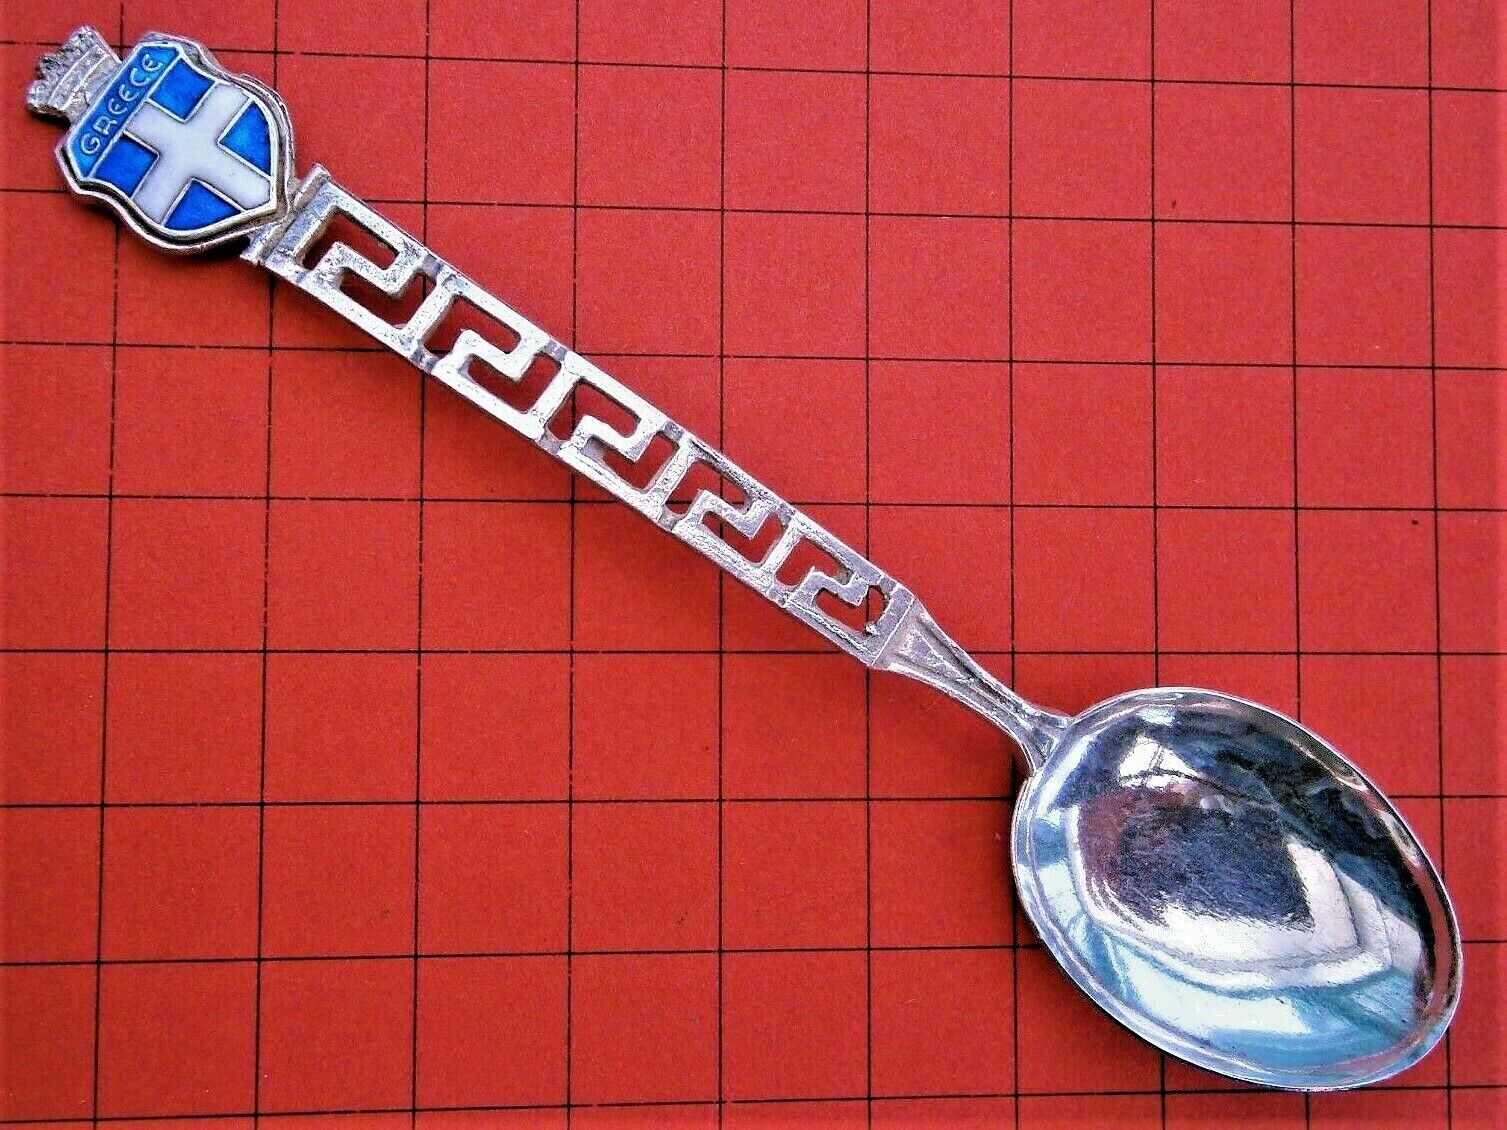 SC53*) Vintage 800 solid silver Greece key flag souvenir Collectors spoon 